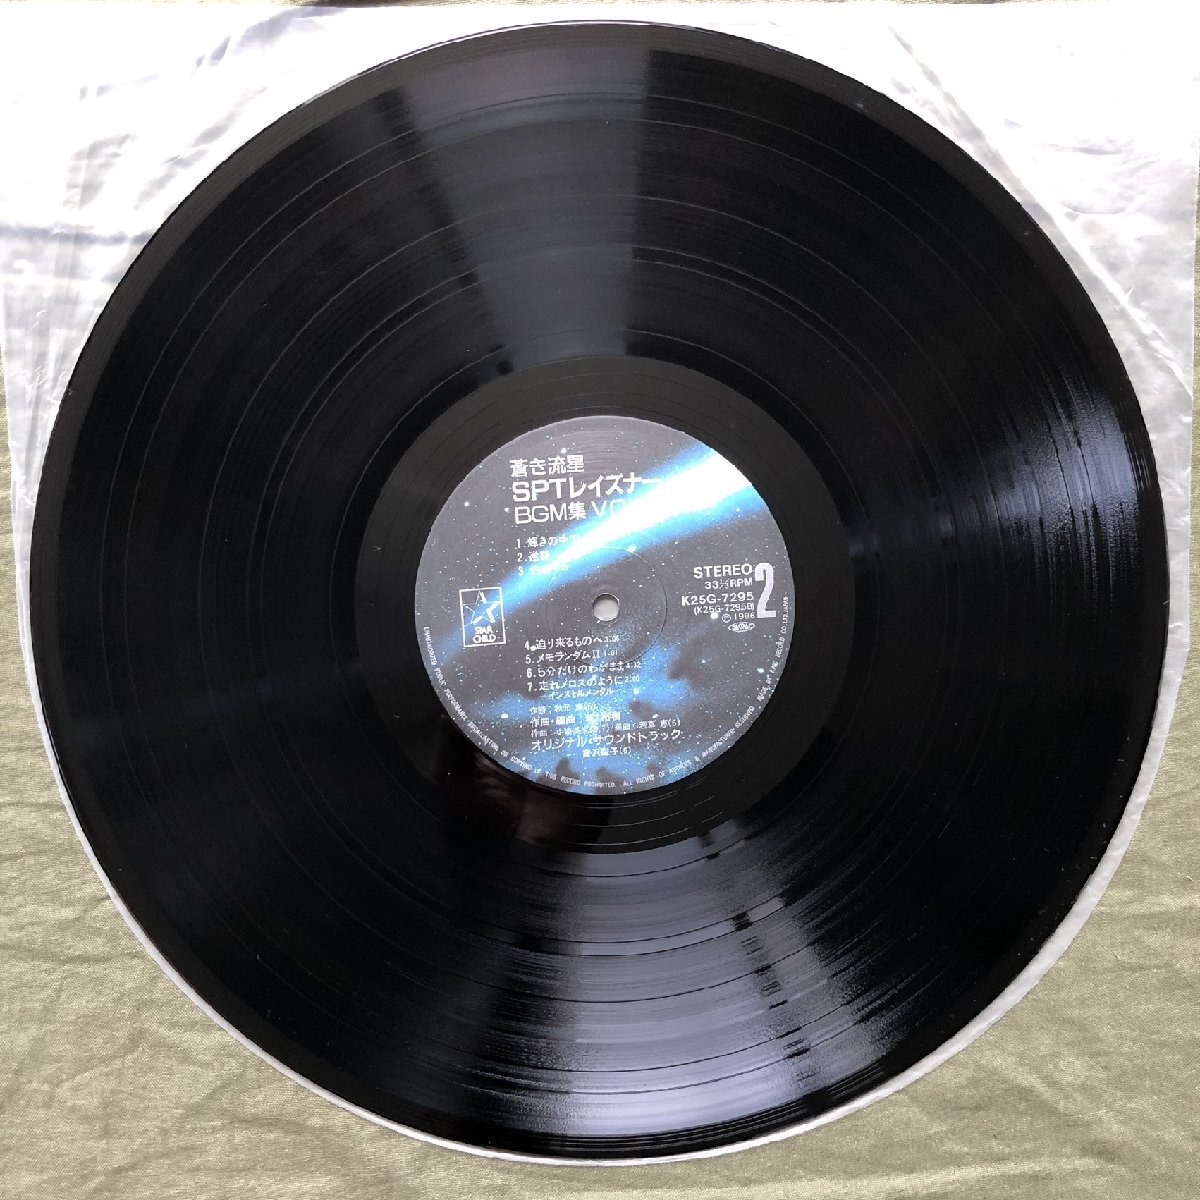  царапина нет прекрасный запись хорошо jacket 1986 год Blue Comet SPT Layzner Blue Comet SPT Layzner LP запись BGM сборник Vol*2 с лентой аниме .... постер есть 